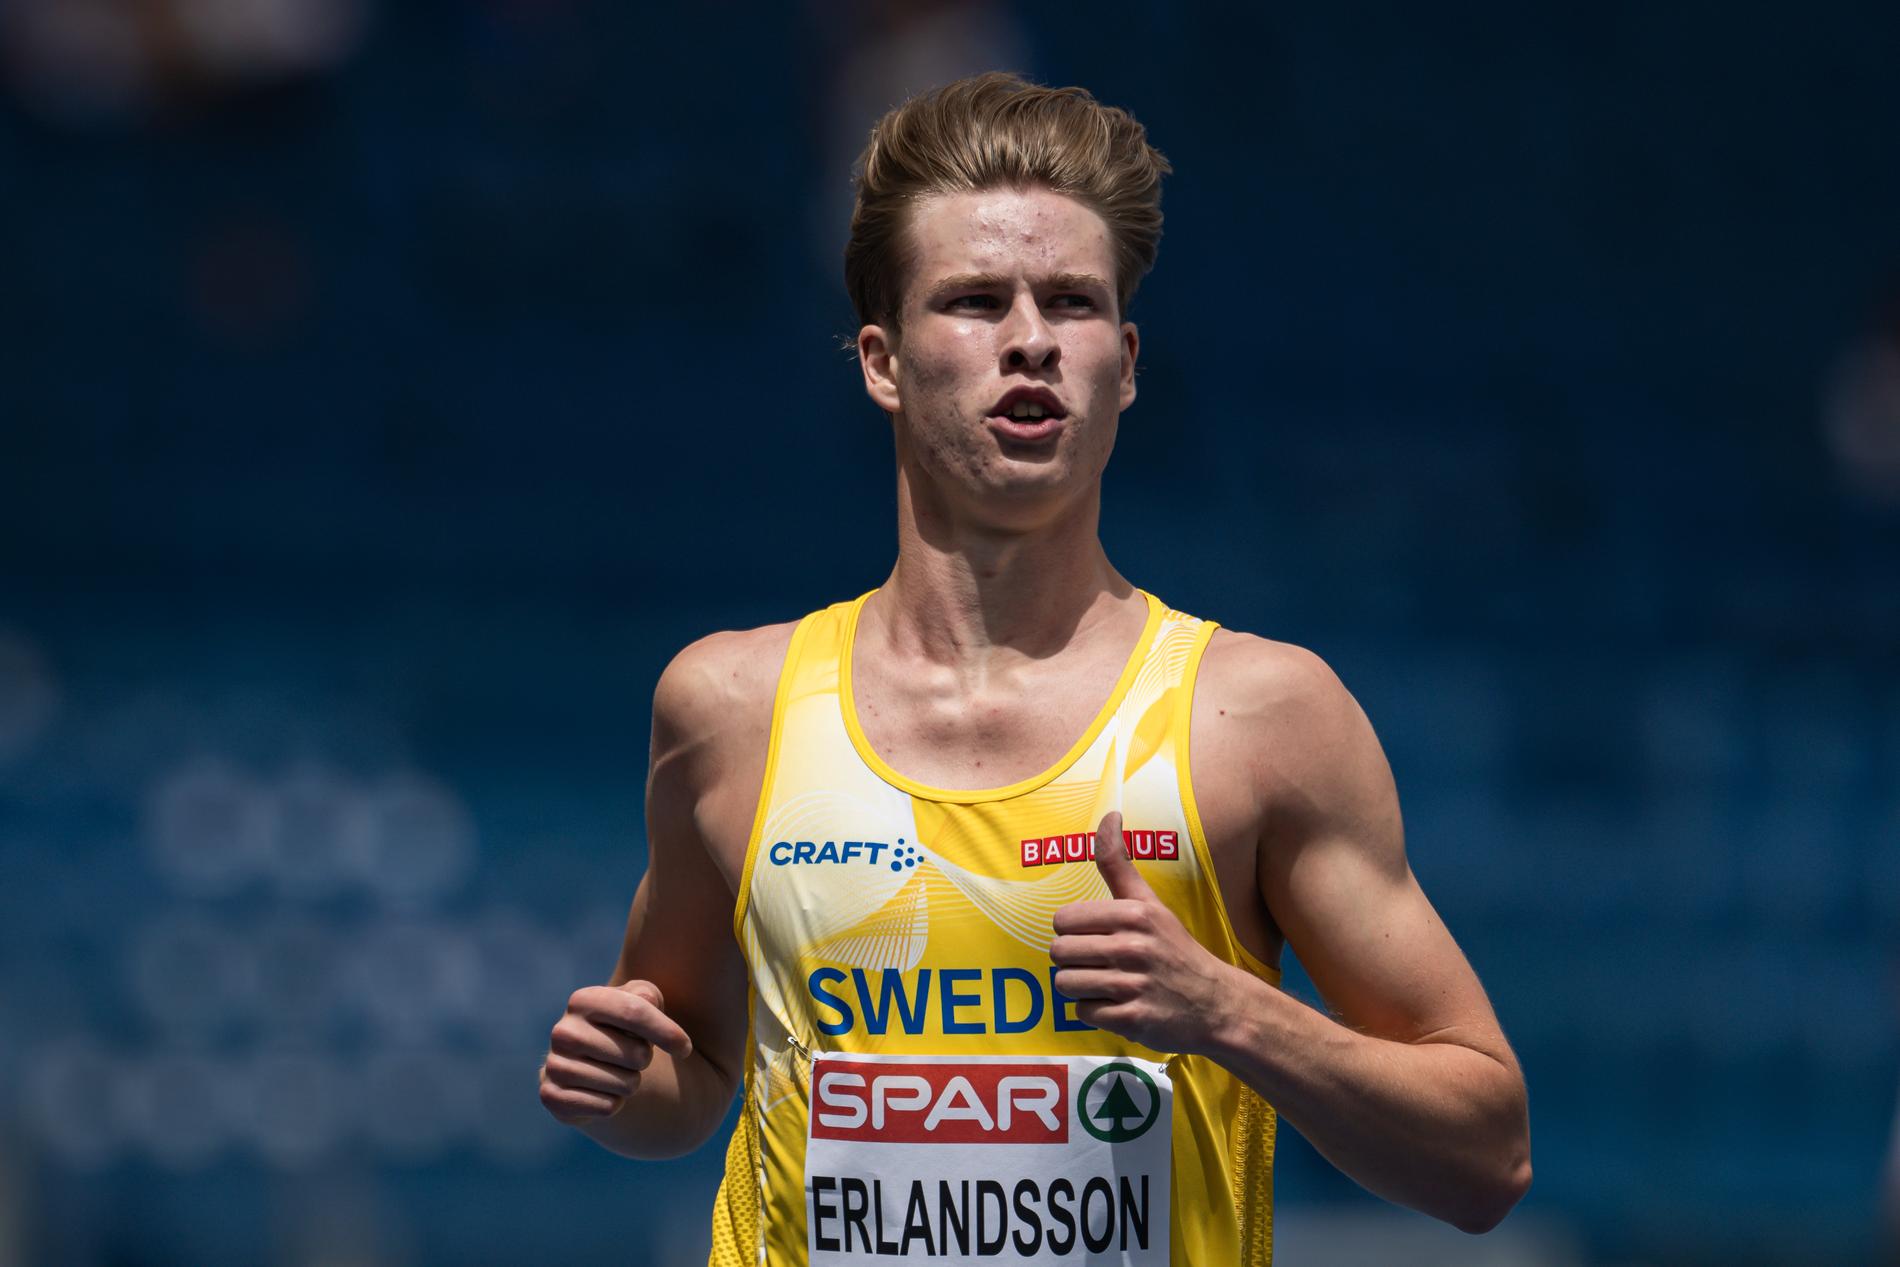 Erik Erlandsson